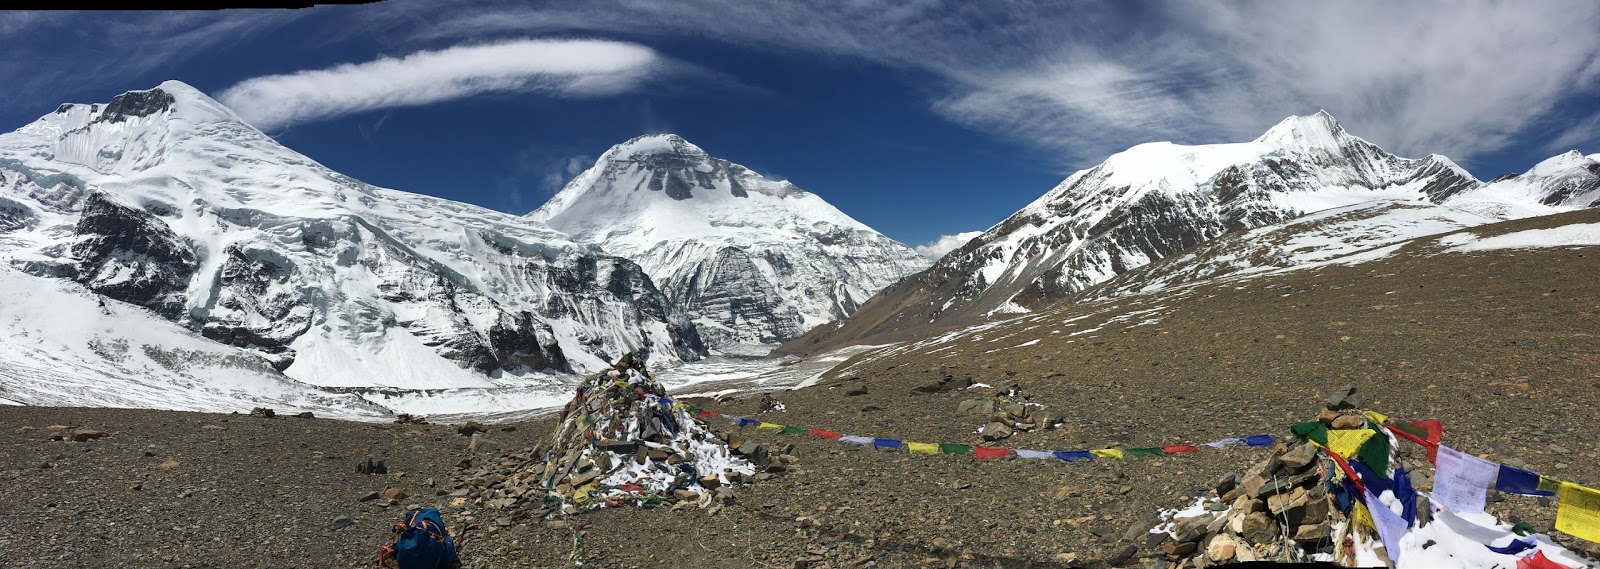 Дхаулагири (8167 м). Седьмой по высоте восьмитысячник в мире